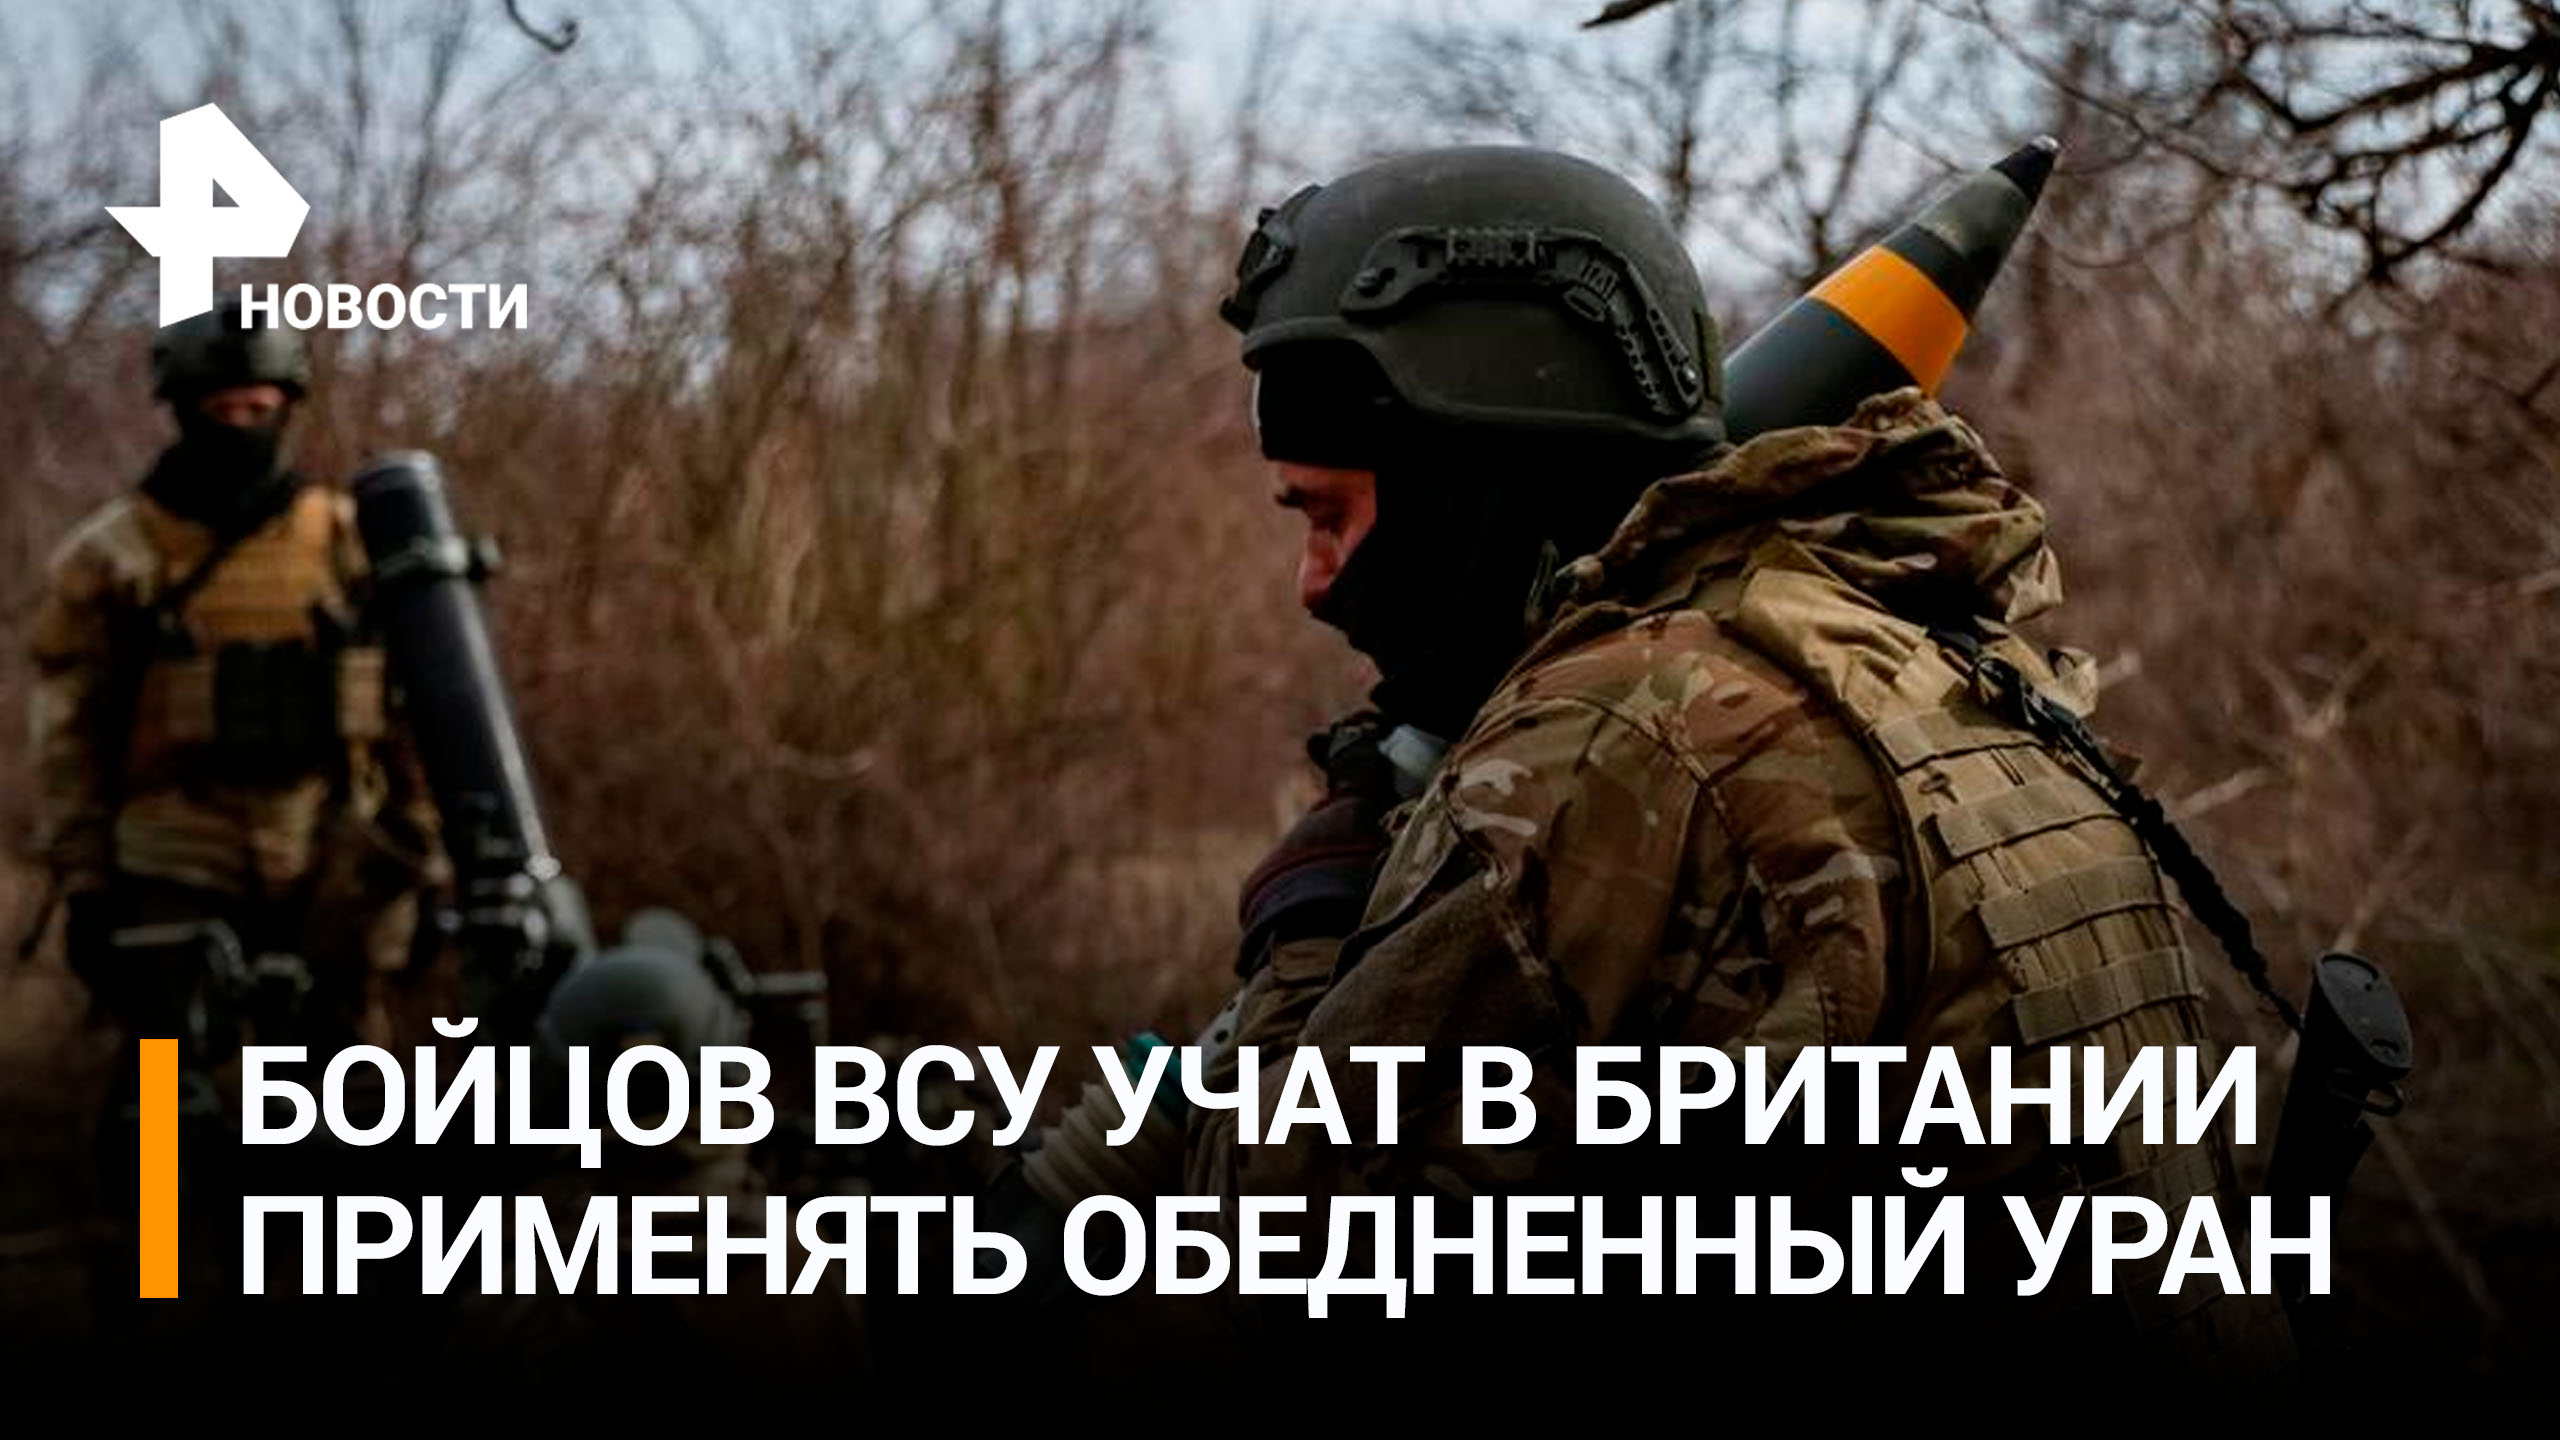 Британские инструкторы обучали солдат ВСУ применению снарядов с ураном / РЕН Новости